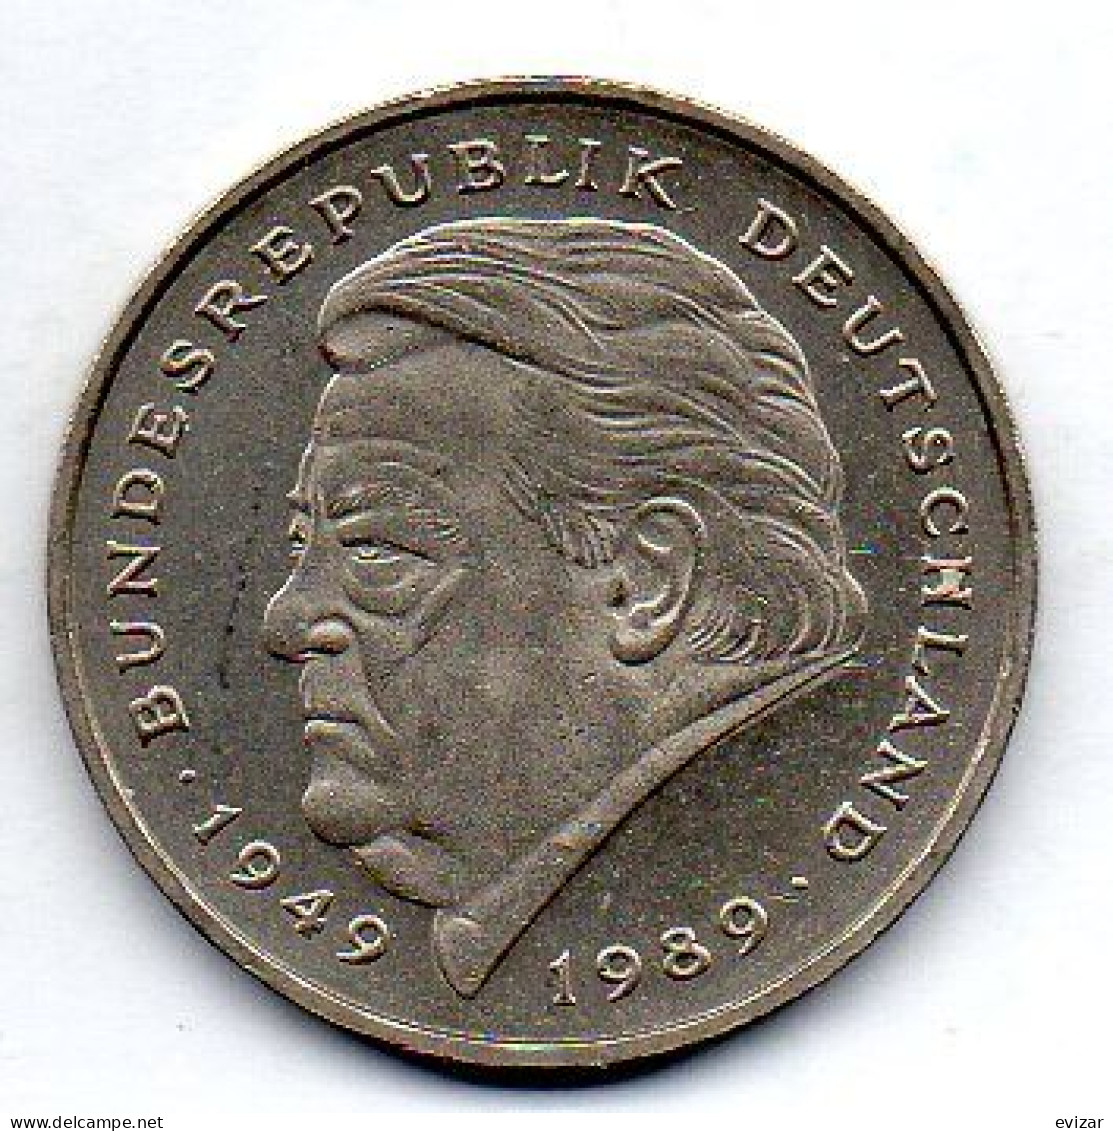 GERMANY - FEDERAL REPUBLIC, 2 Mark, Copper-Nickel, Year 1990-J, KM # 175 - 2 Mark